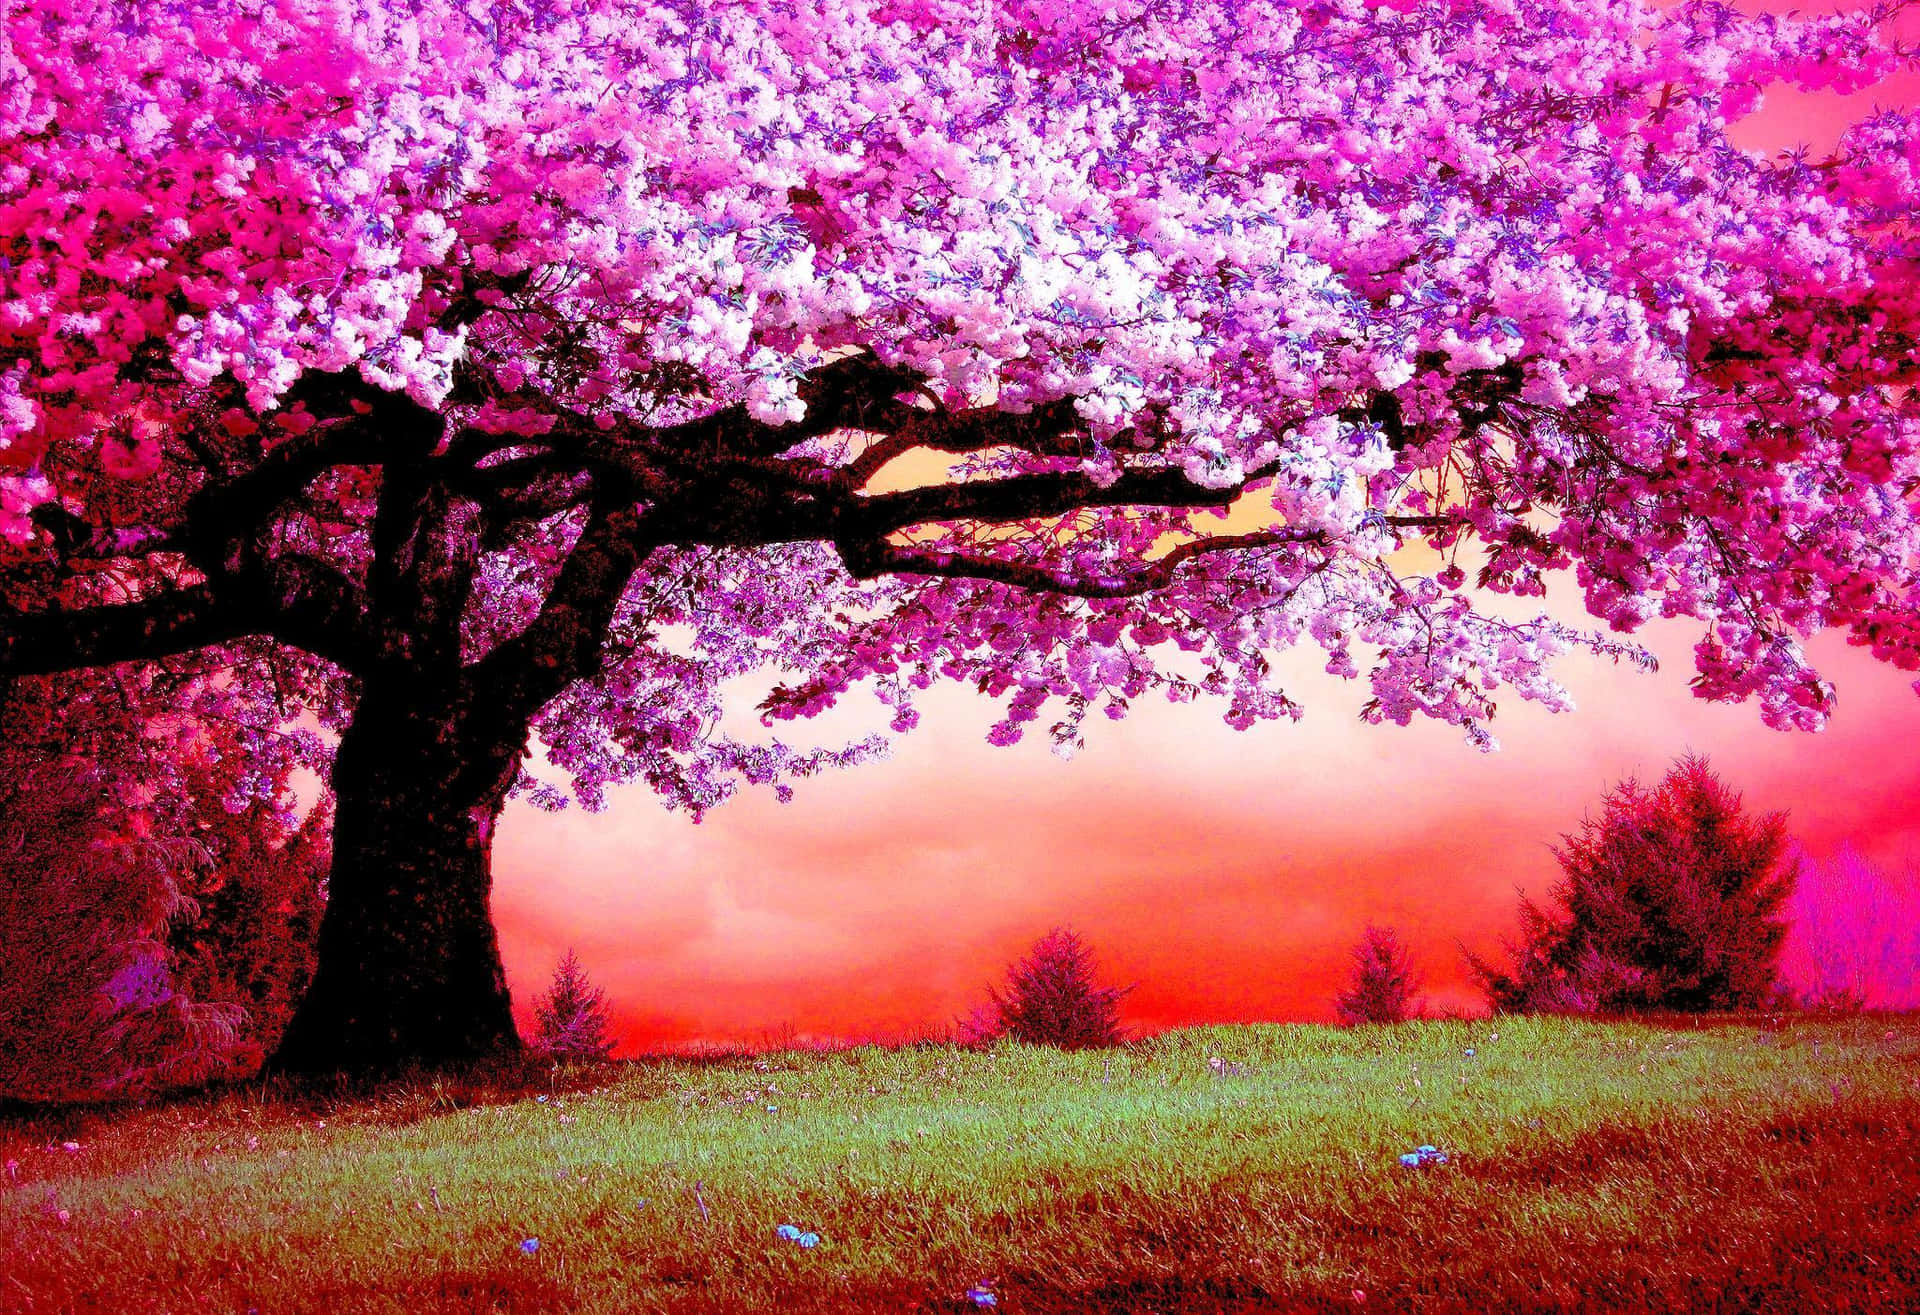 Stupendialberi Rosa In Un Ambiente Da Sogno Sfondo